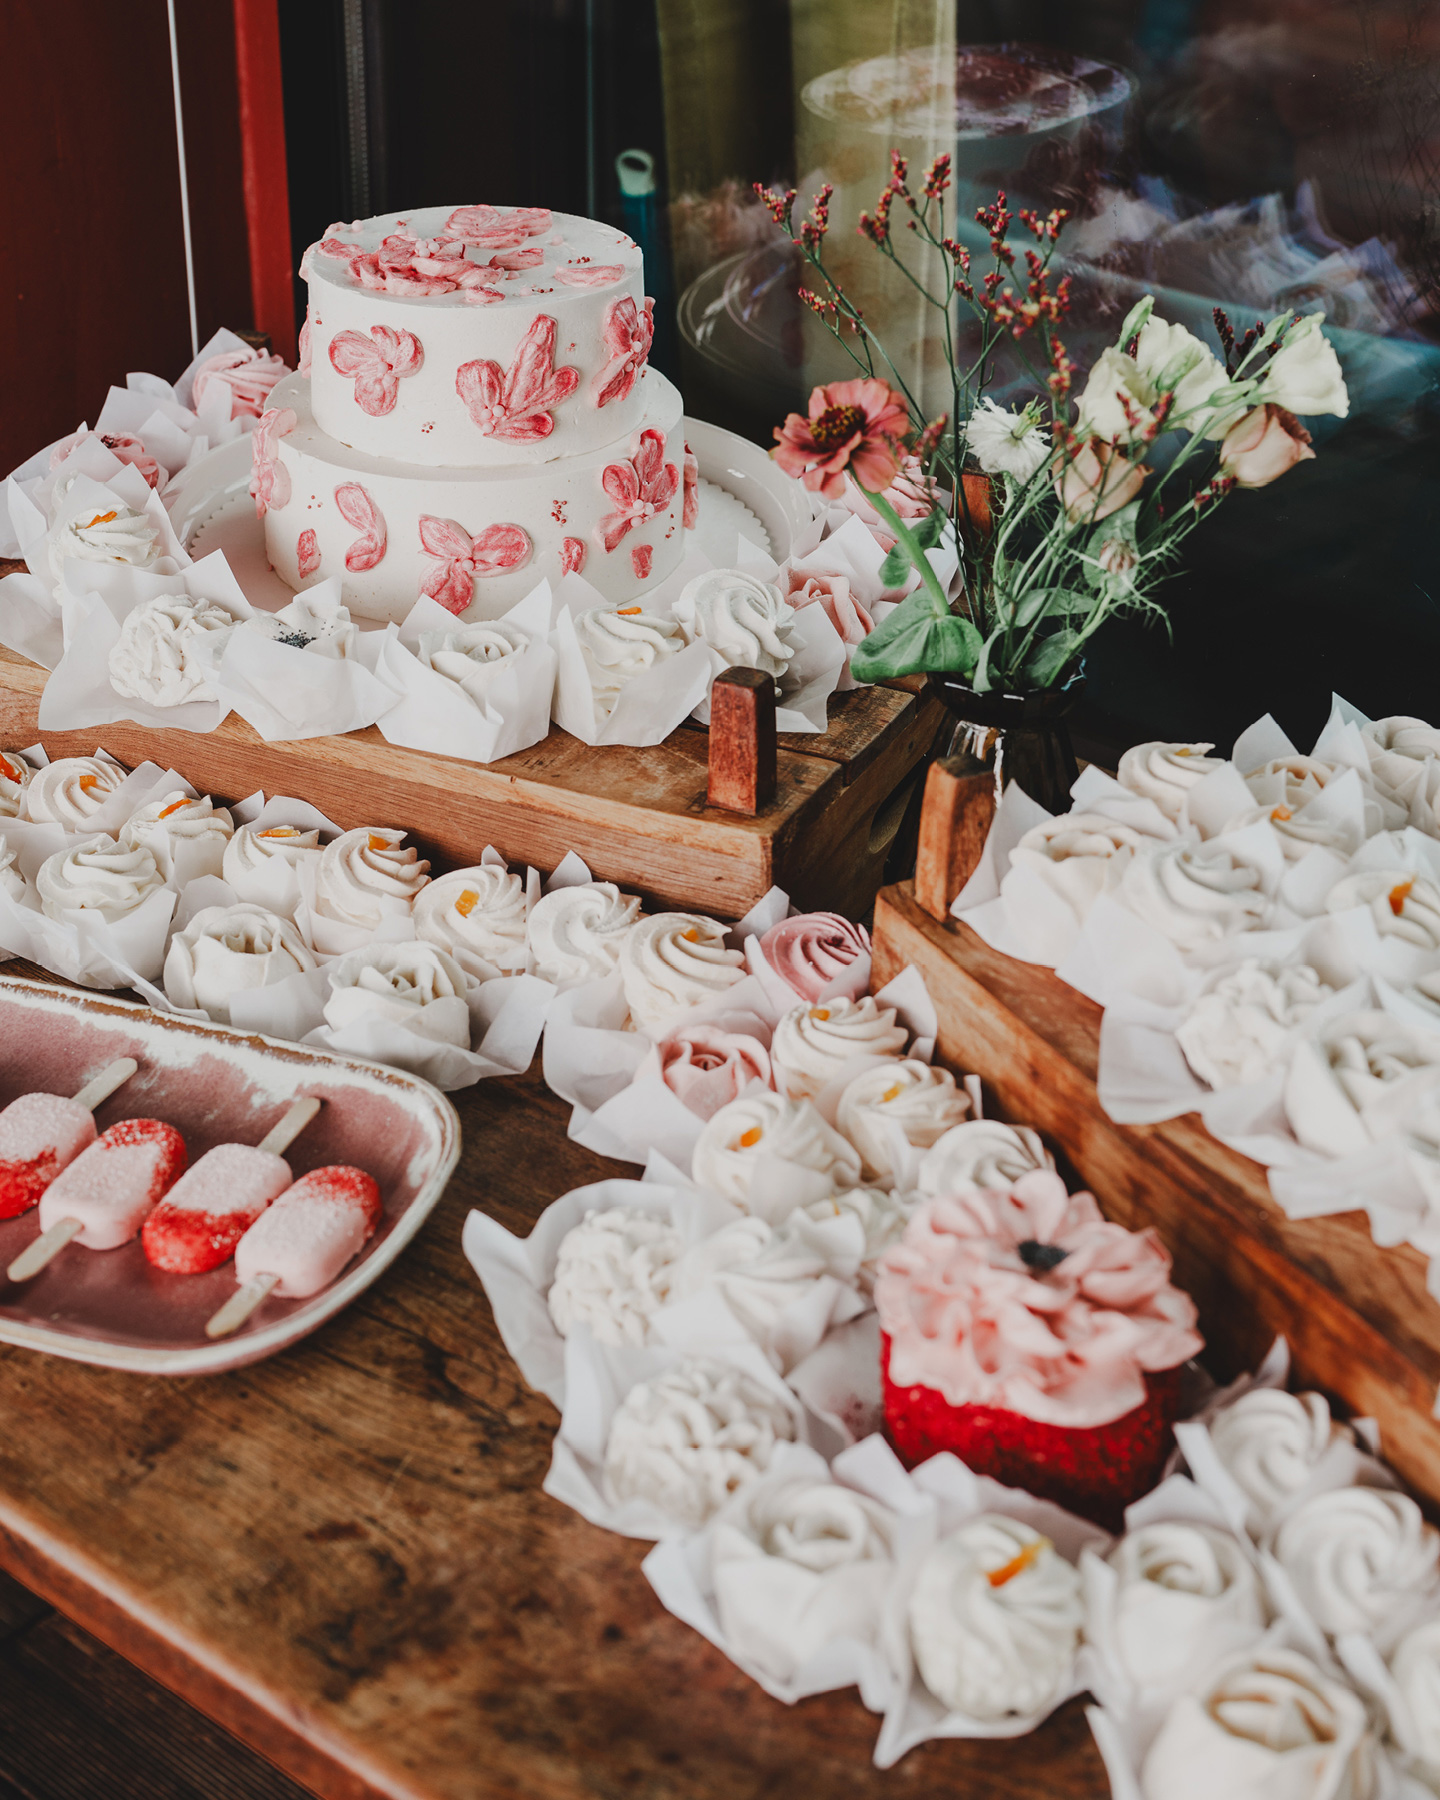 Schön dekorierter Sweet Table mit Hochzeitstorte